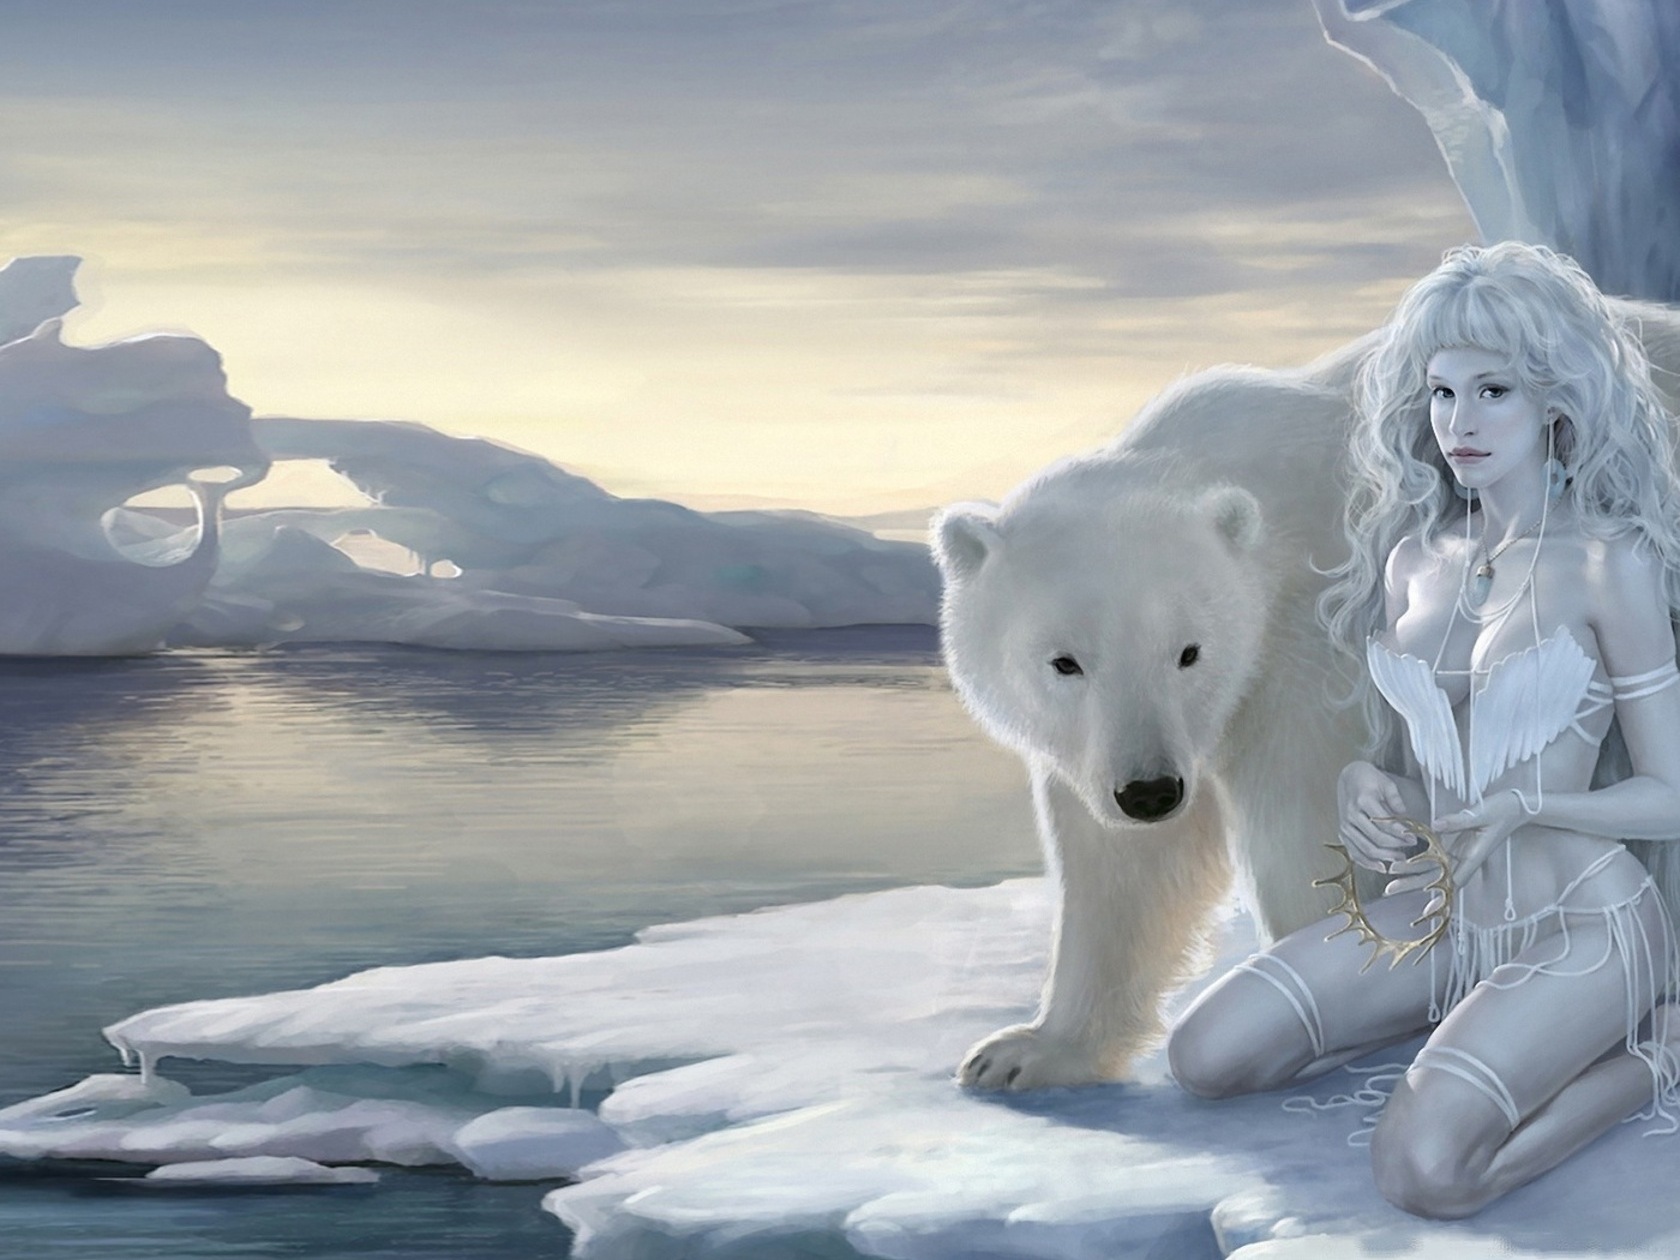 3d обои Снежная королева сидит на льдине с белым медведем  1680х1260 # 8919